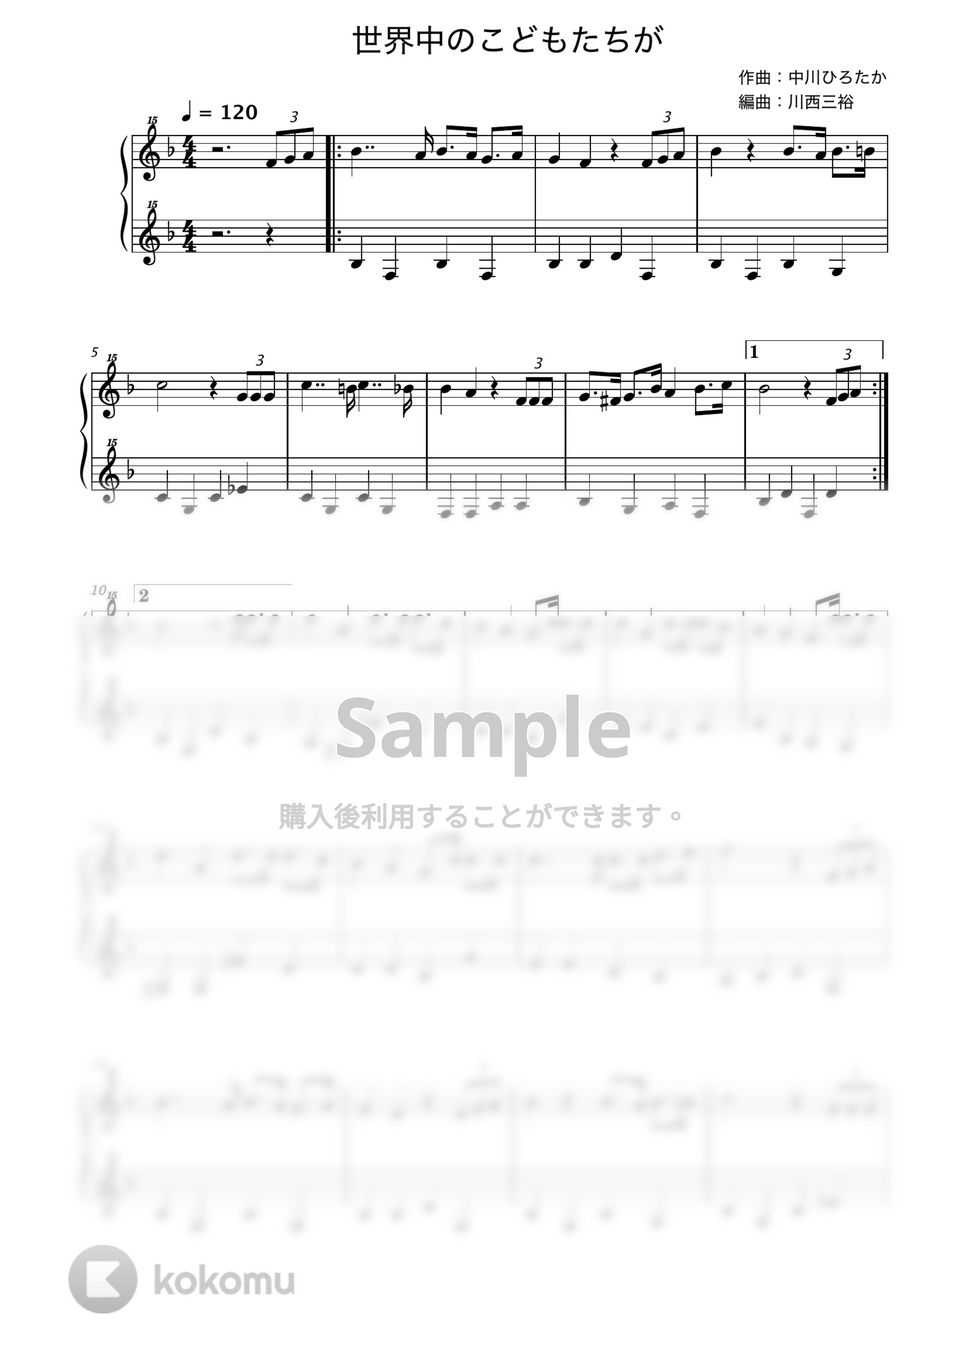 中川ひろたか - 世界中のこどもたちが (トイピアノ / 25鍵盤 / 童謡) by 川西三裕